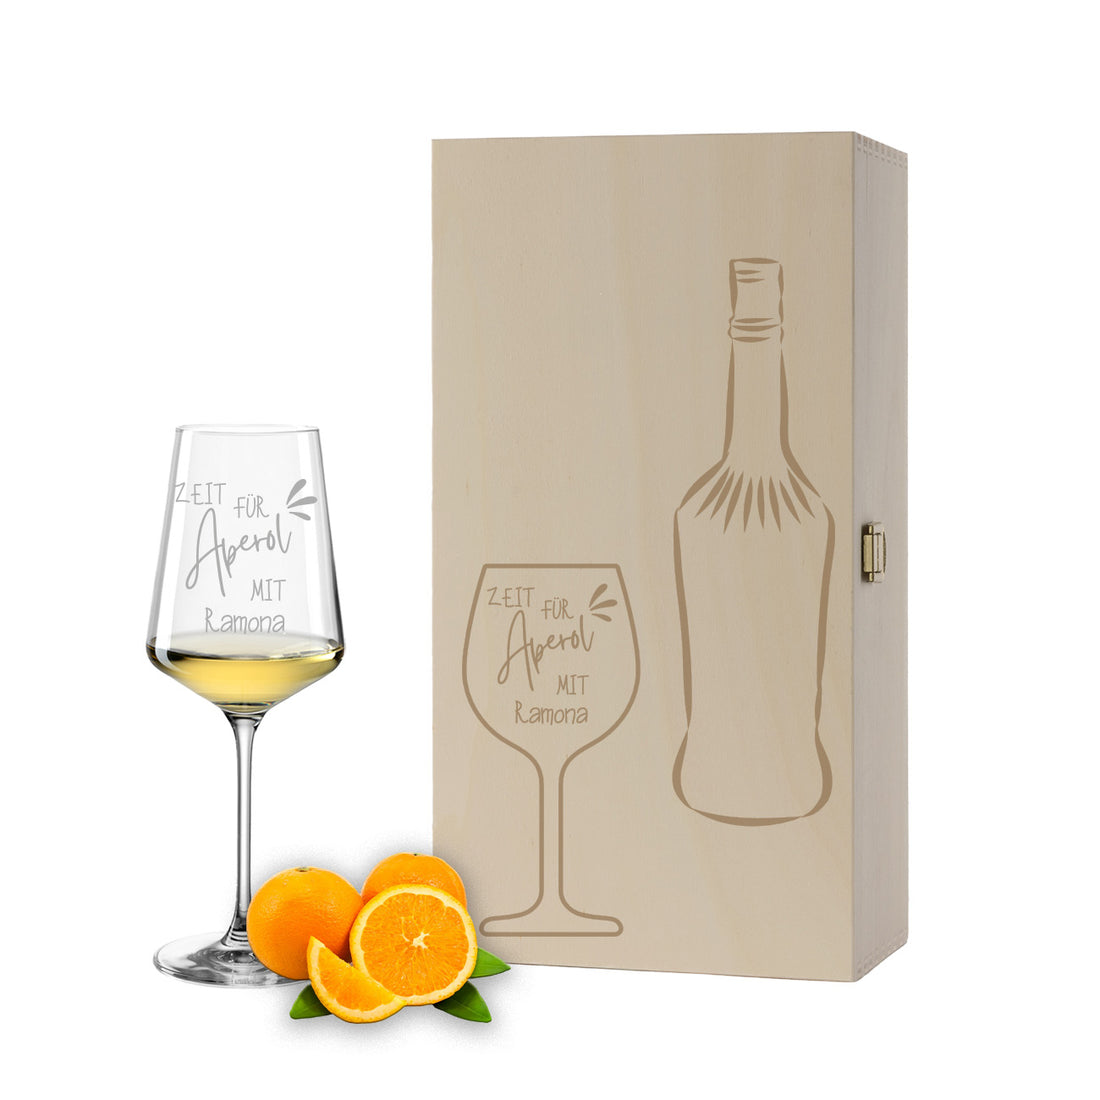 Weinglas mit Gravur Leonardo Puccini "ZEIT FÜR APEROL MIT..." inkl. Holzbox klein mit Wunschname